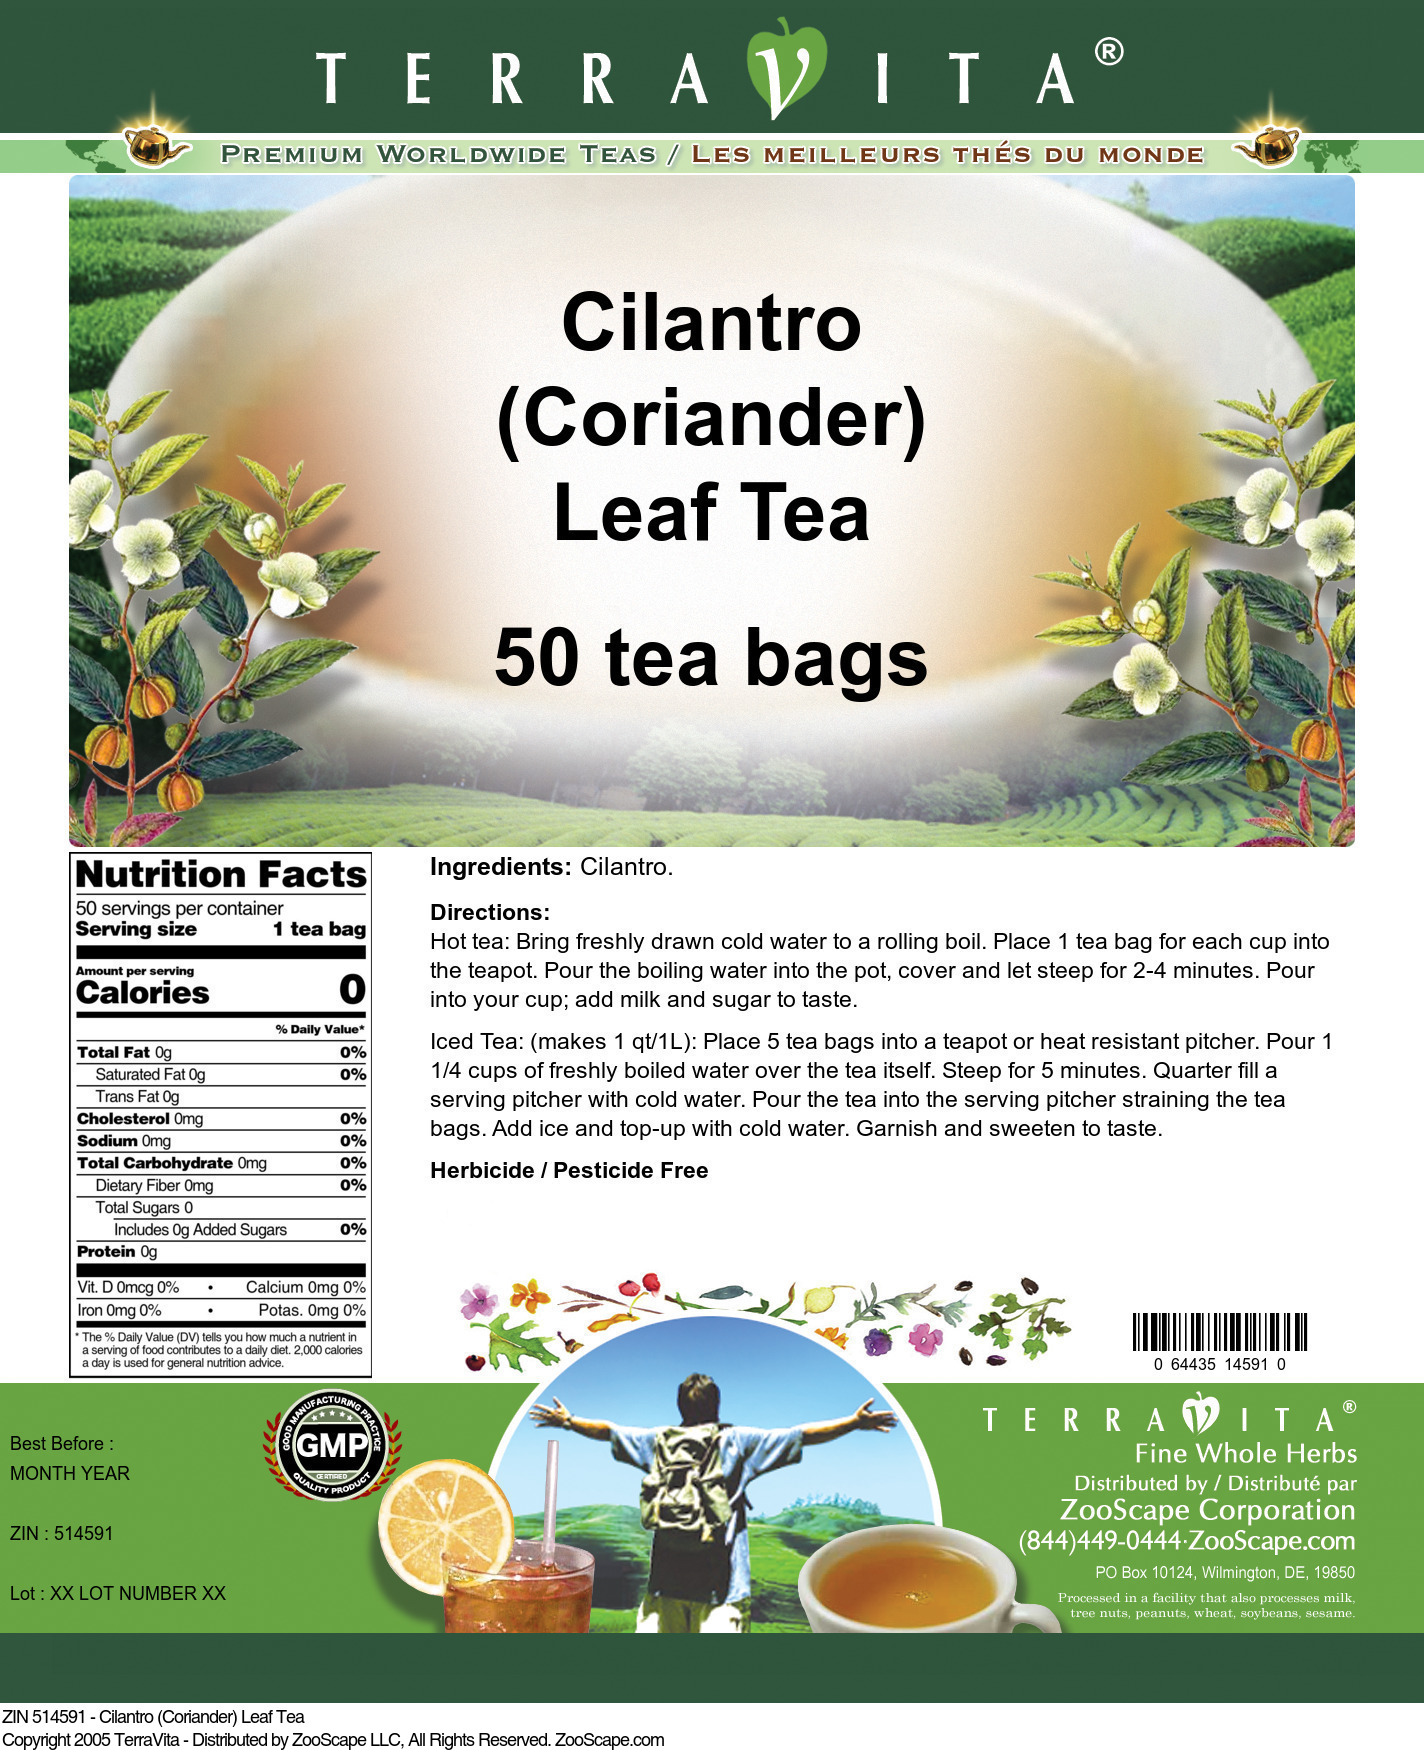 Cilantro (Coriander) Leaf Tea - Label